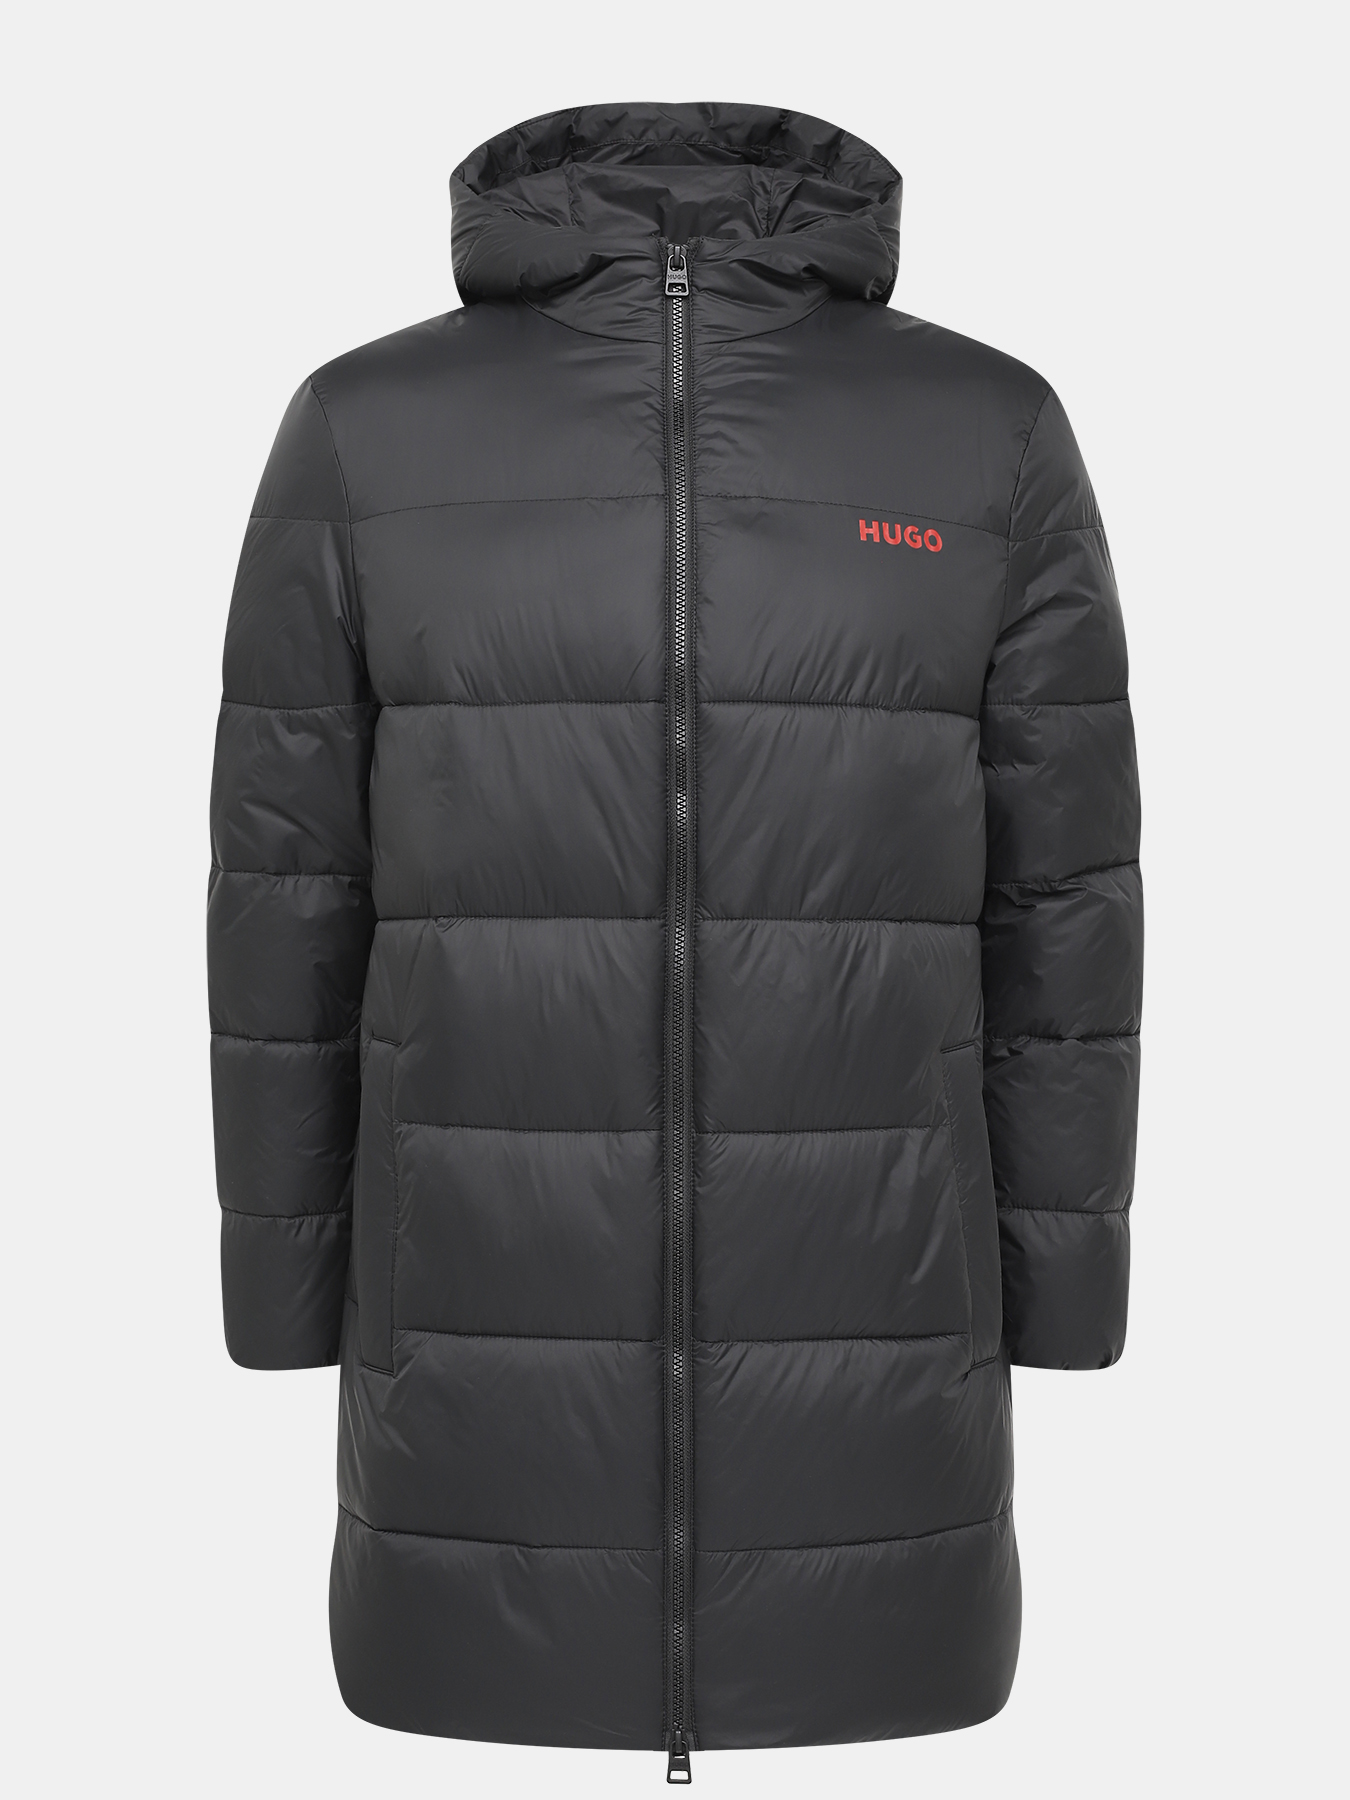 Удлиненная куртка Mati HUGO 426043-043, цвет черный, размер 48-50 - фото 1